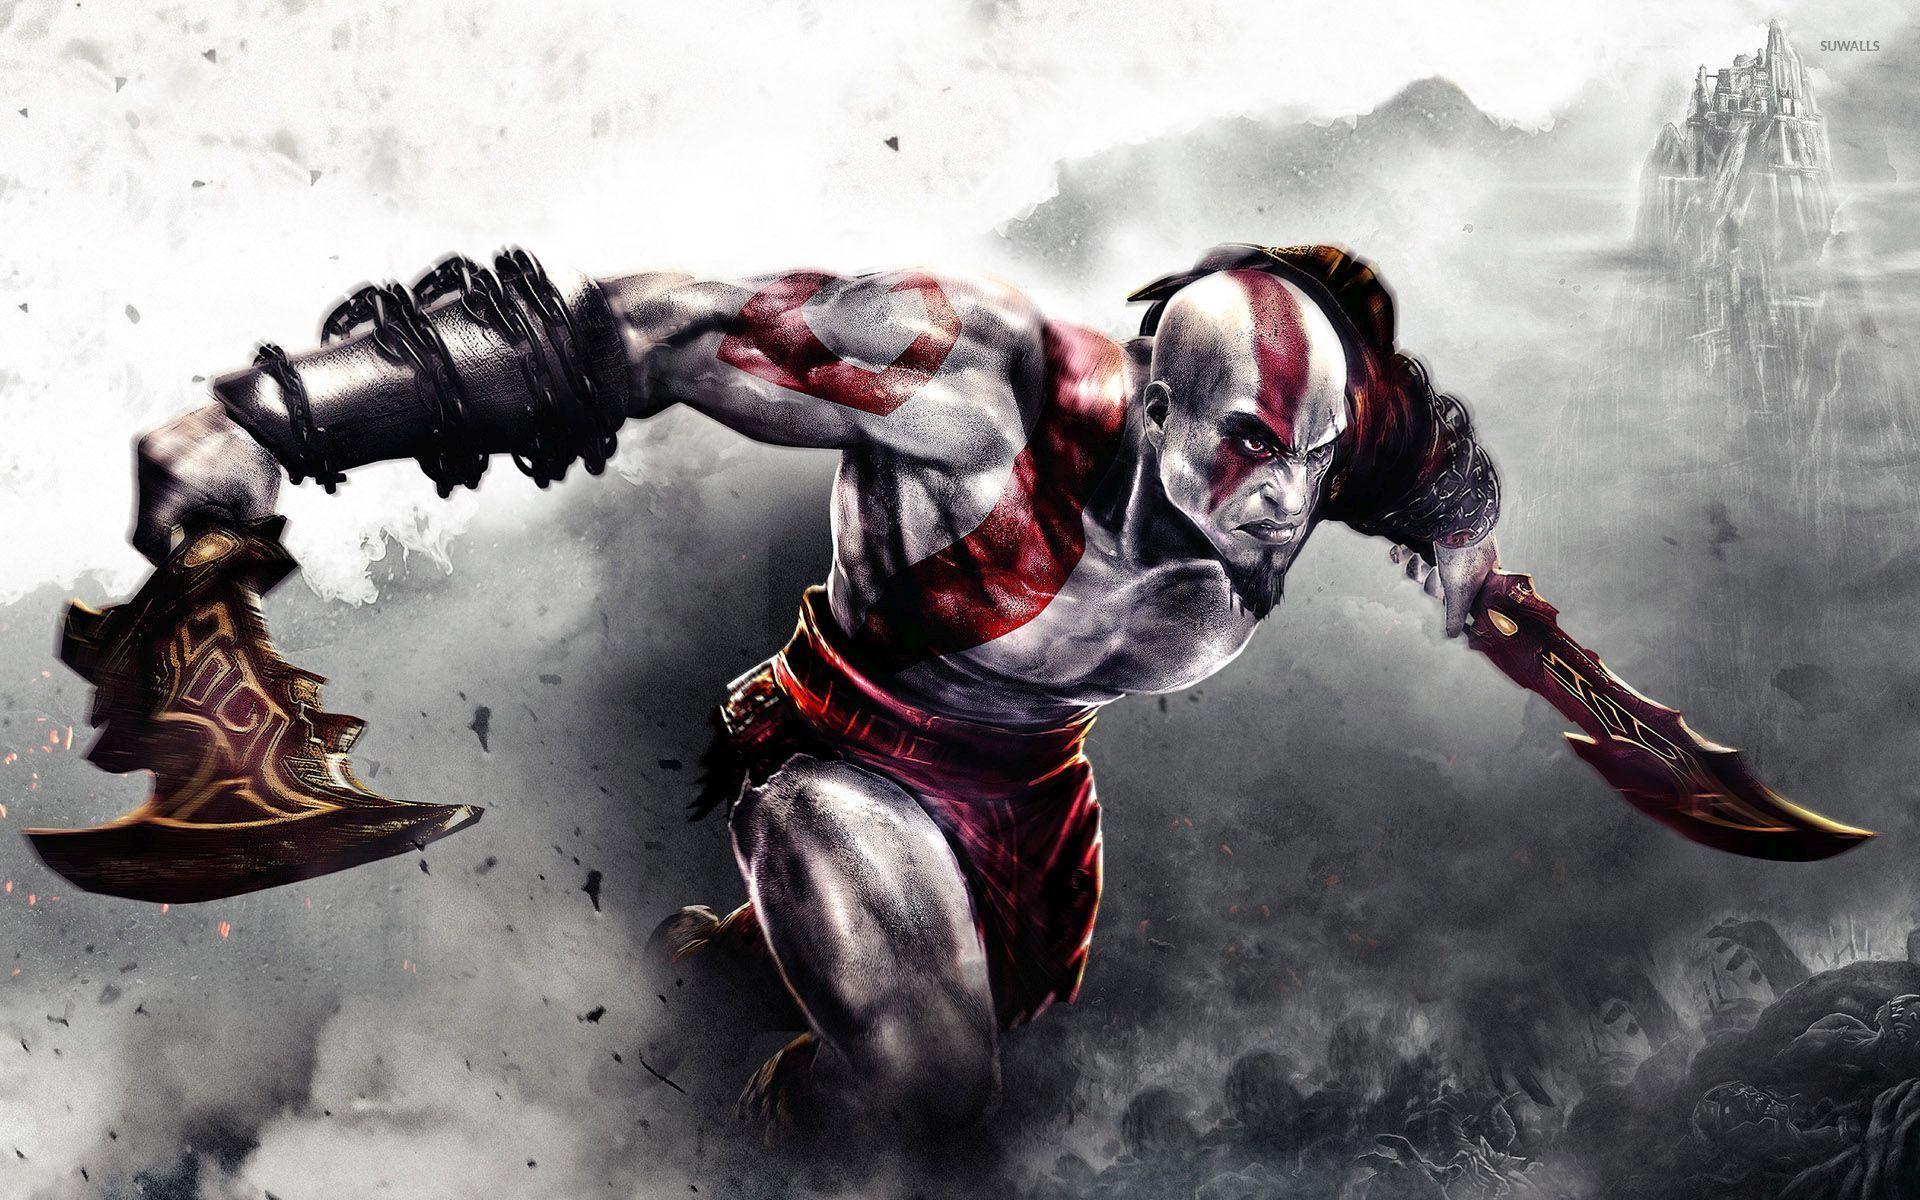 Wallpaper: Kratos Wallpaper. Kratos Wallpaper